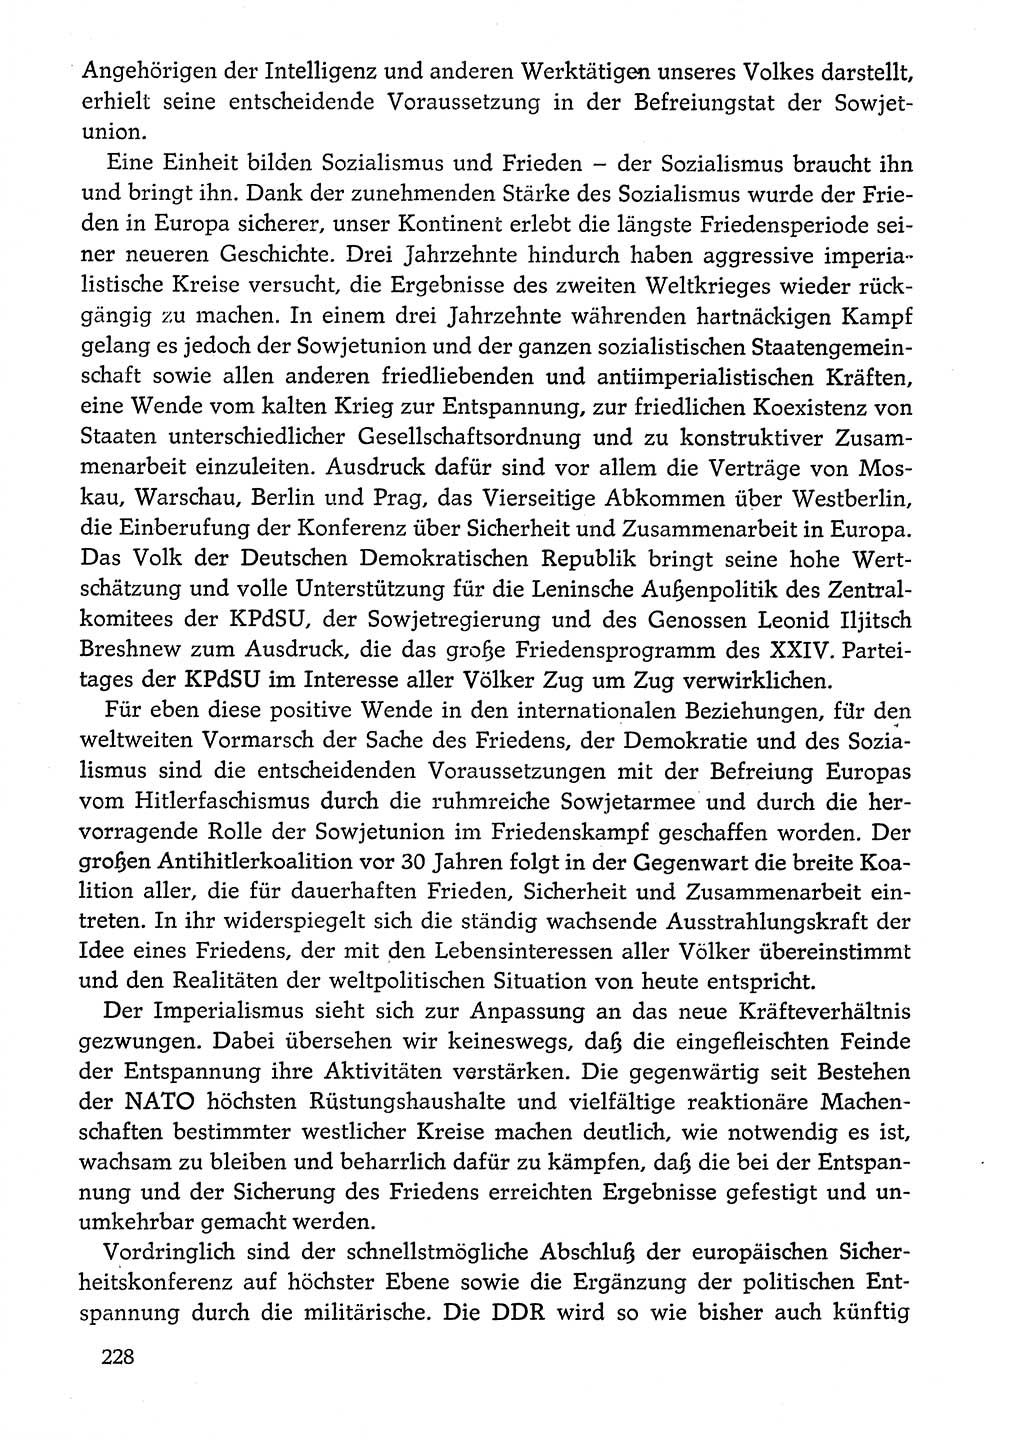 Dokumente der Sozialistischen Einheitspartei Deutschlands (SED) [Deutsche Demokratische Republik (DDR)] 1974-1975, Seite 228 (Dok. SED DDR 1978, Bd. ⅩⅤ, S. 228)